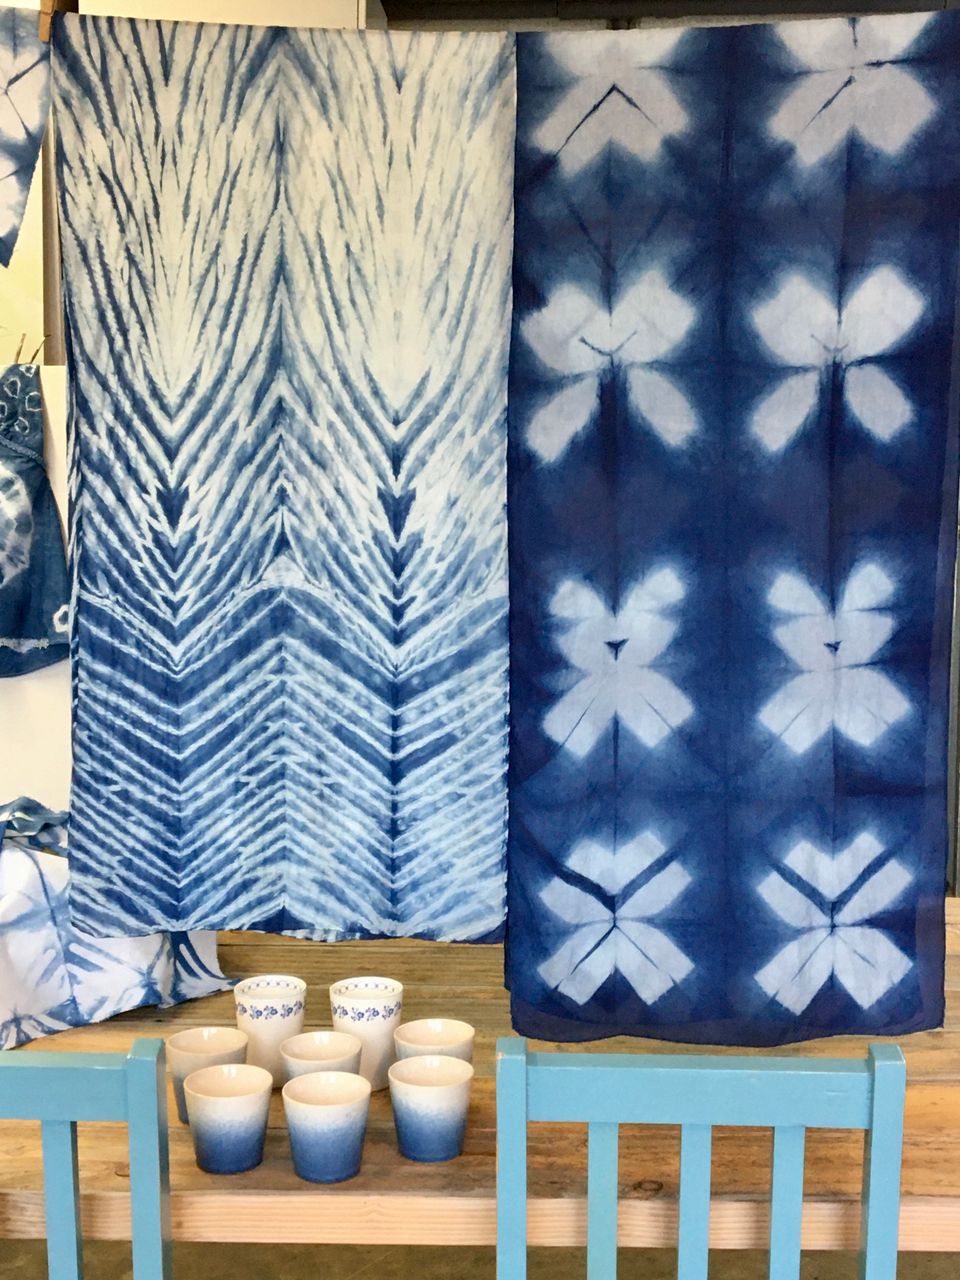 Twee voorbeelden van verschillende Shibori patronen